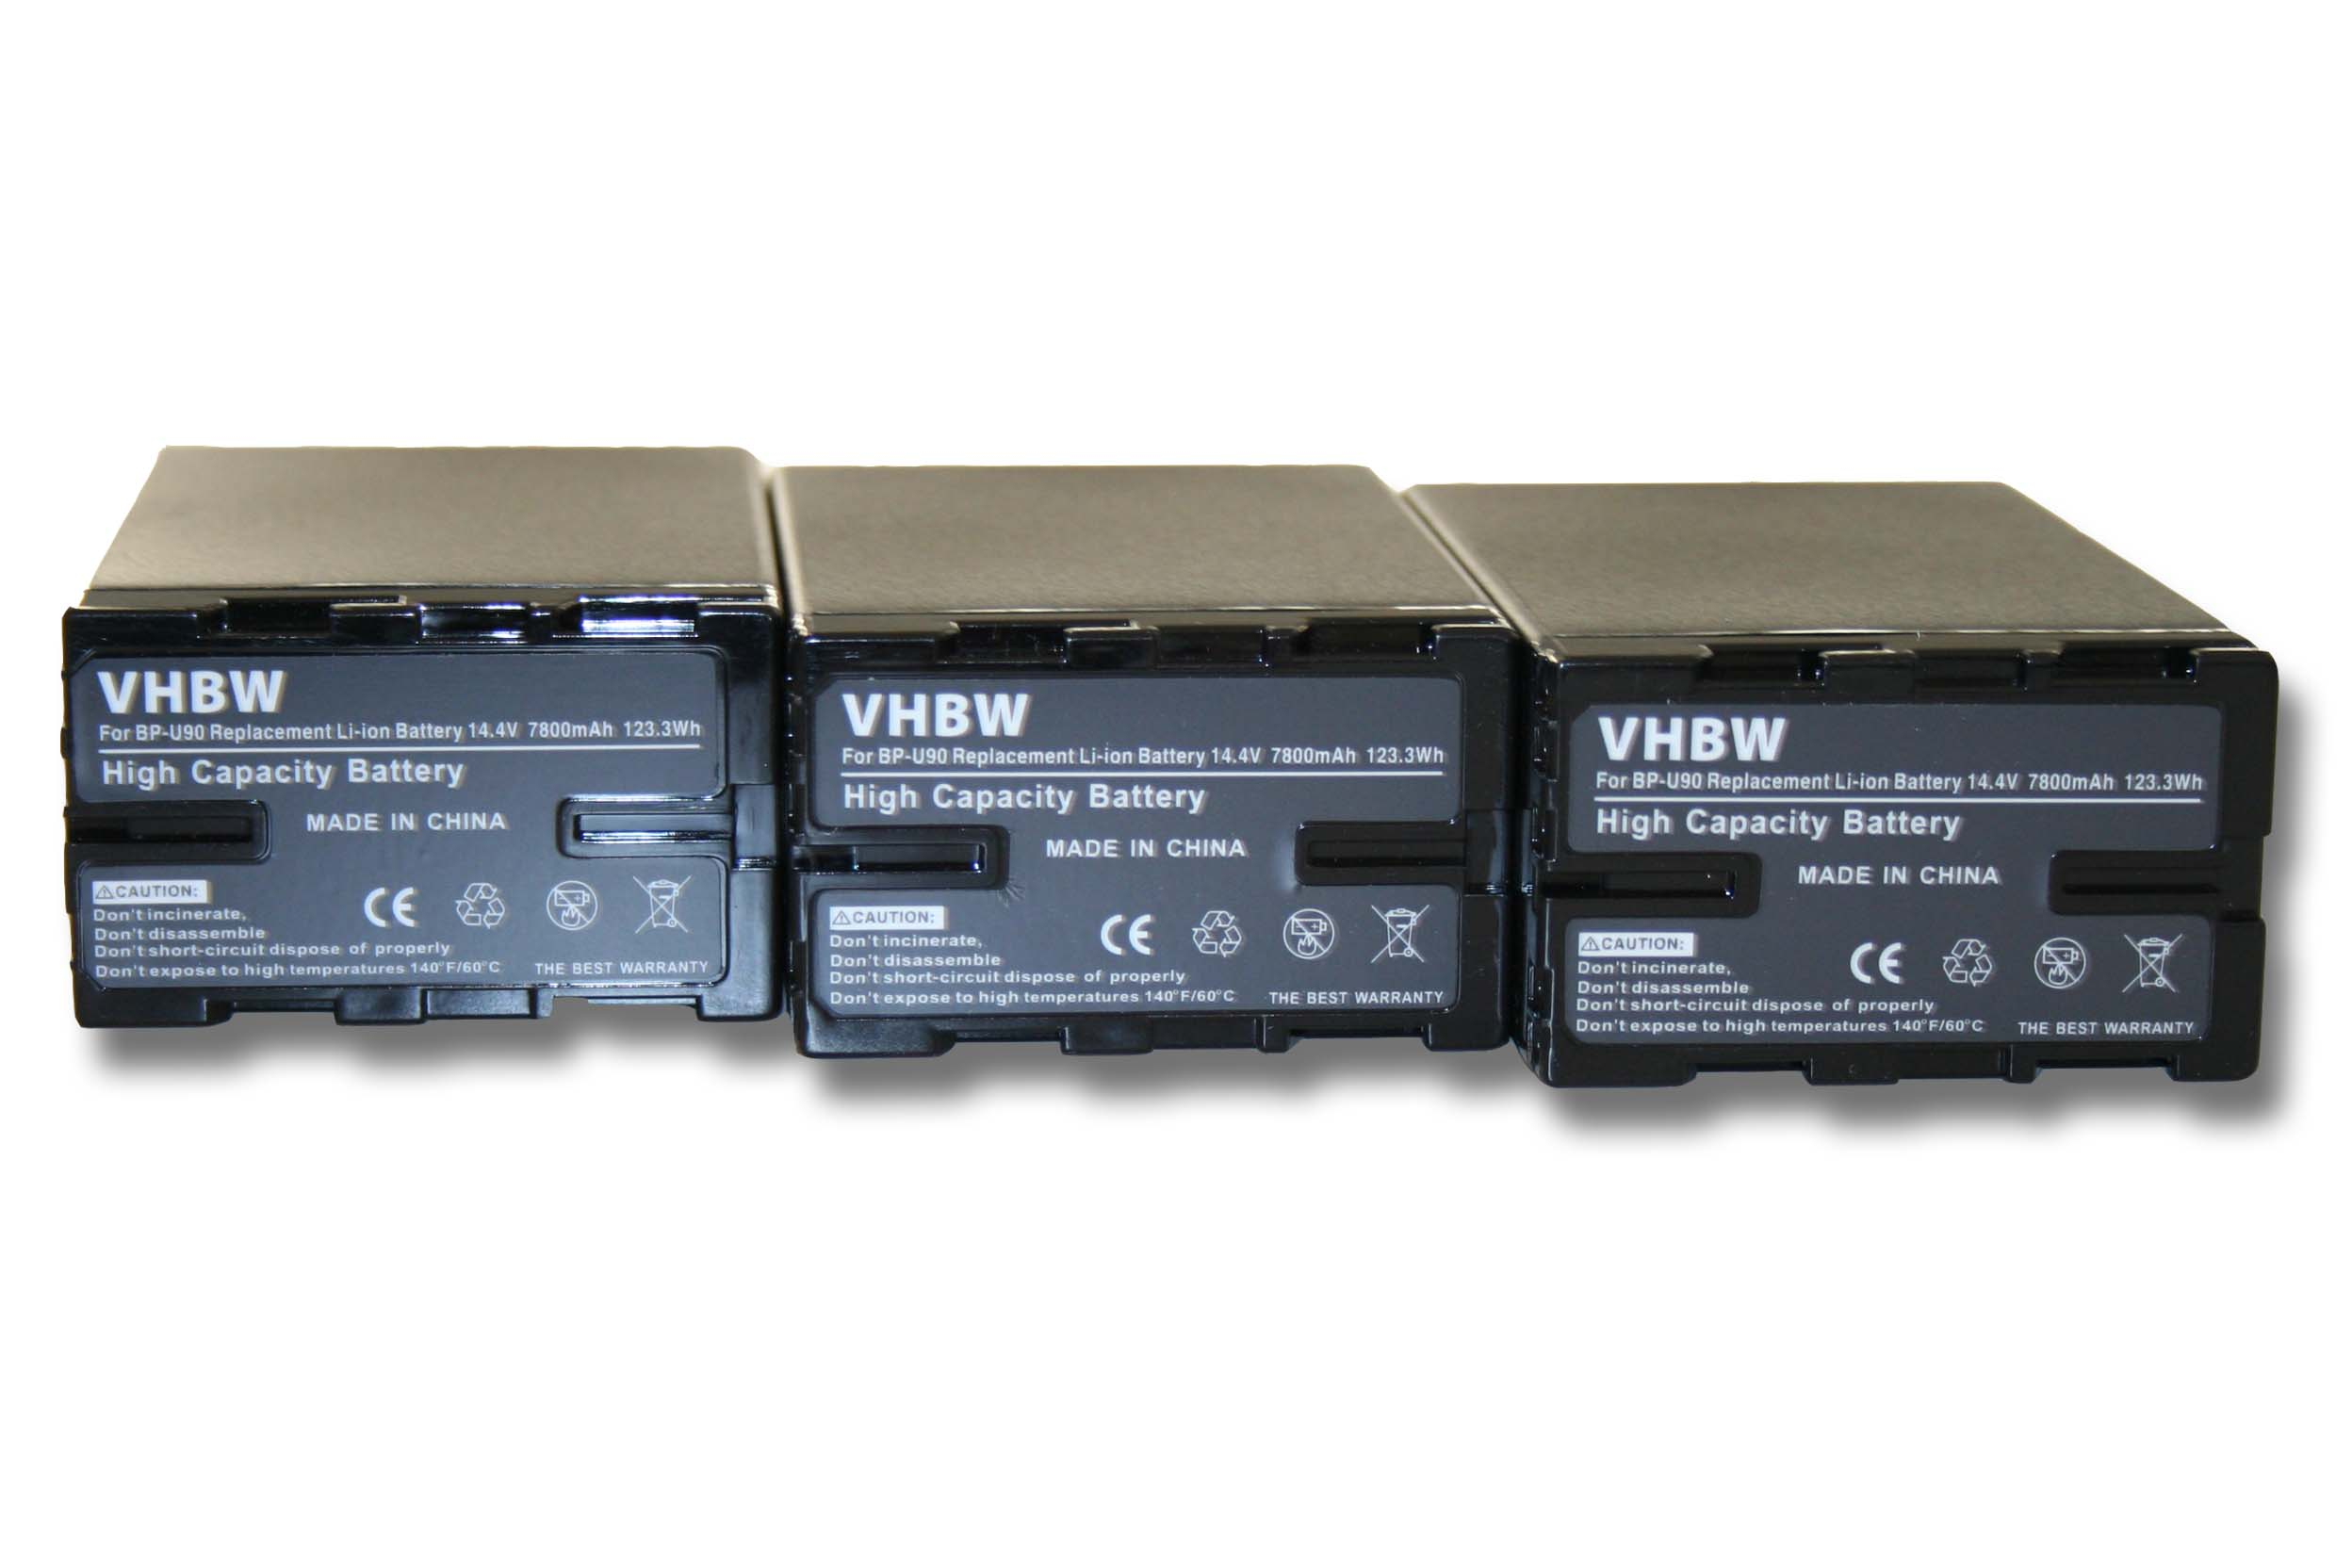 VHBW kompatibel mit Sony 14.8 PMW-EX1r PMW-200, 7800 Volt, - PMW-160, PMW-150, Videokamera, PMW-EX1, PMW-100, Li-Ion Akku